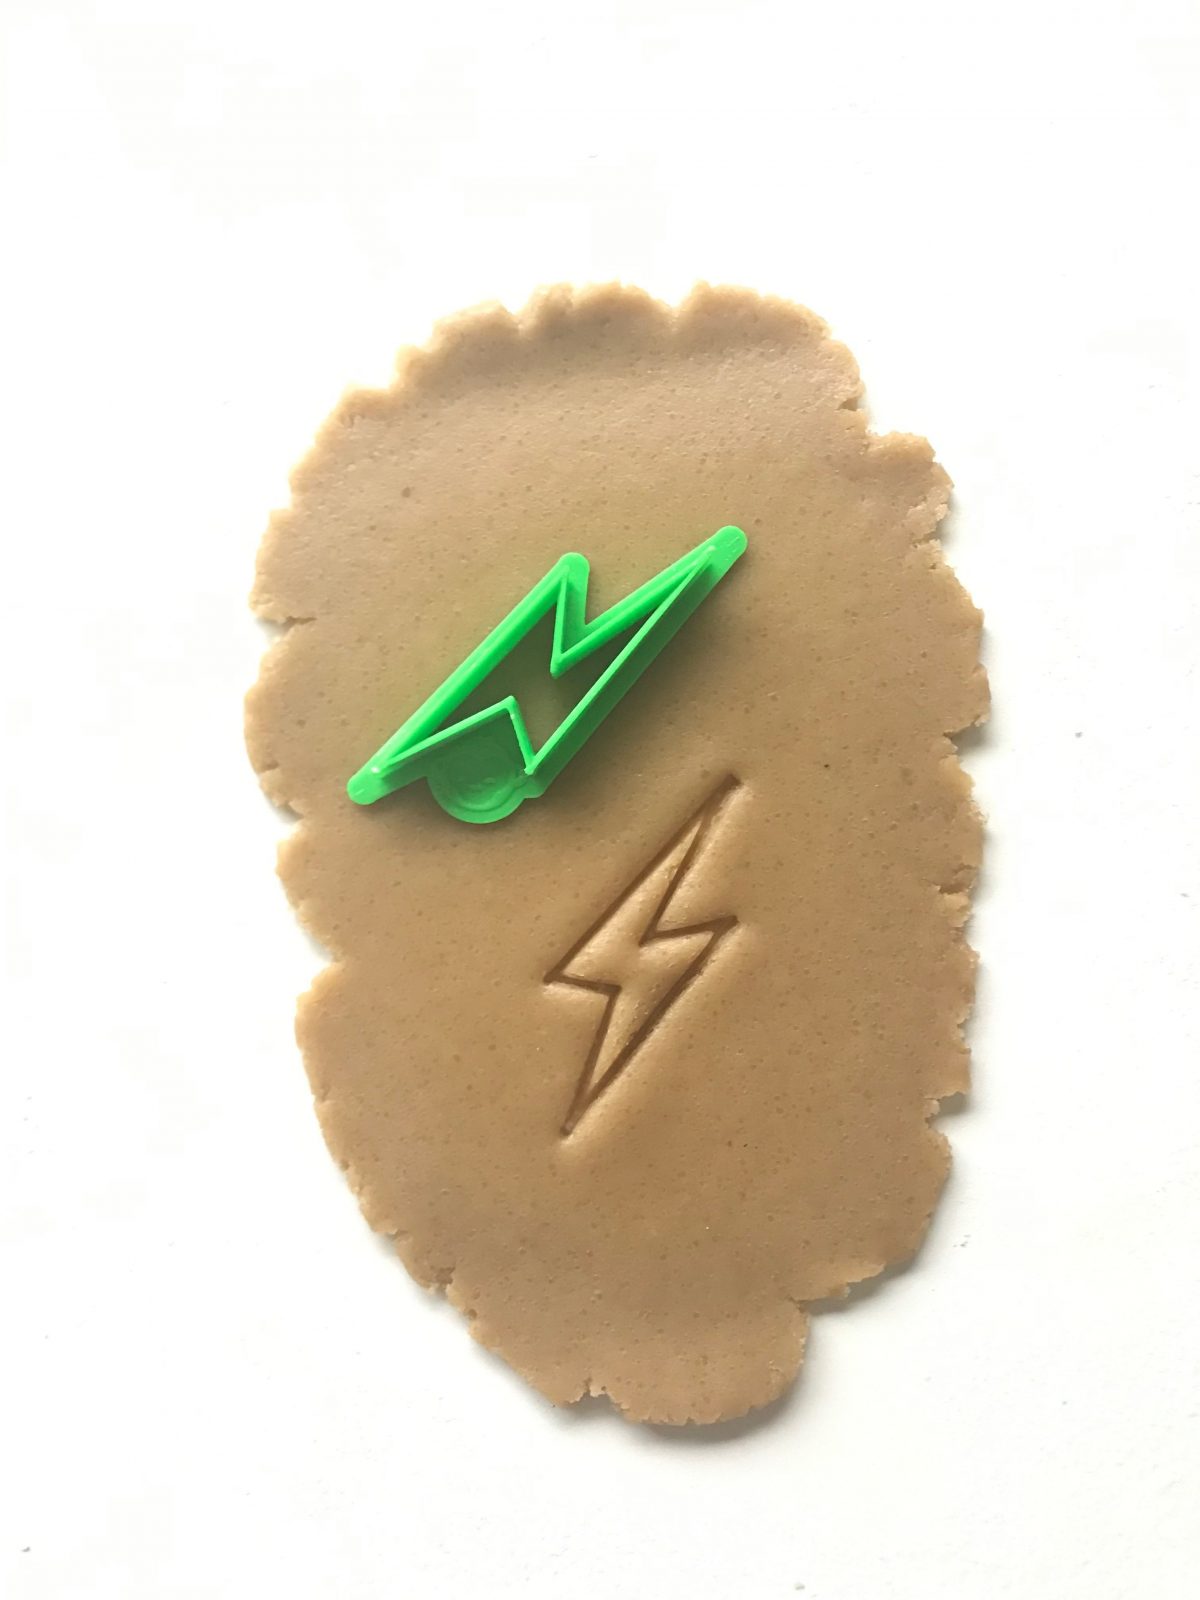 lightning bolt cookie cutter